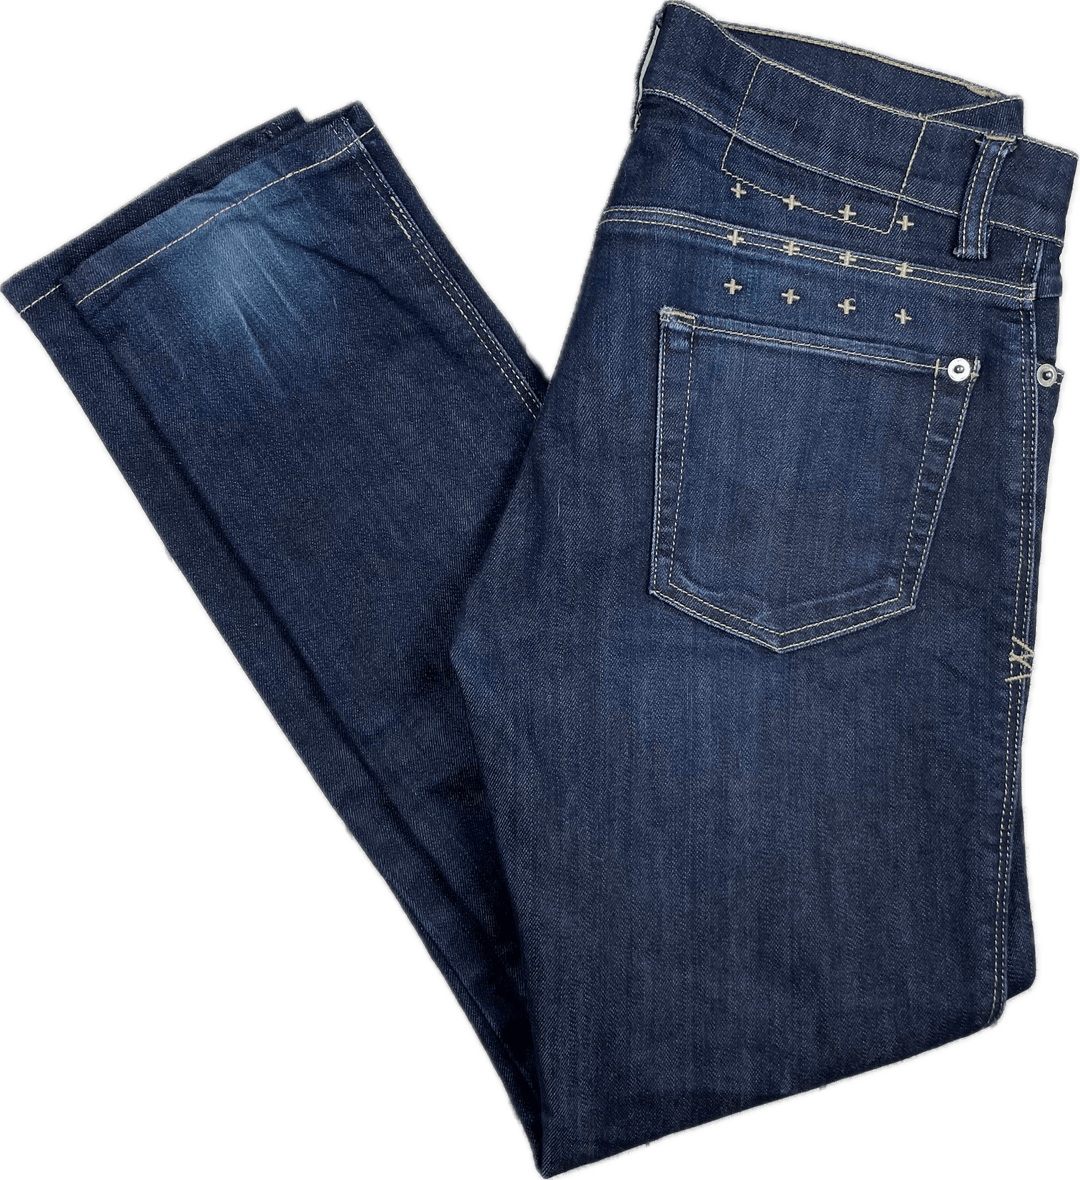 Tsubi 'Super Skinny ZIp' Jeans in Tight Arse Indigo Wash - Size 27S - Jean Pool